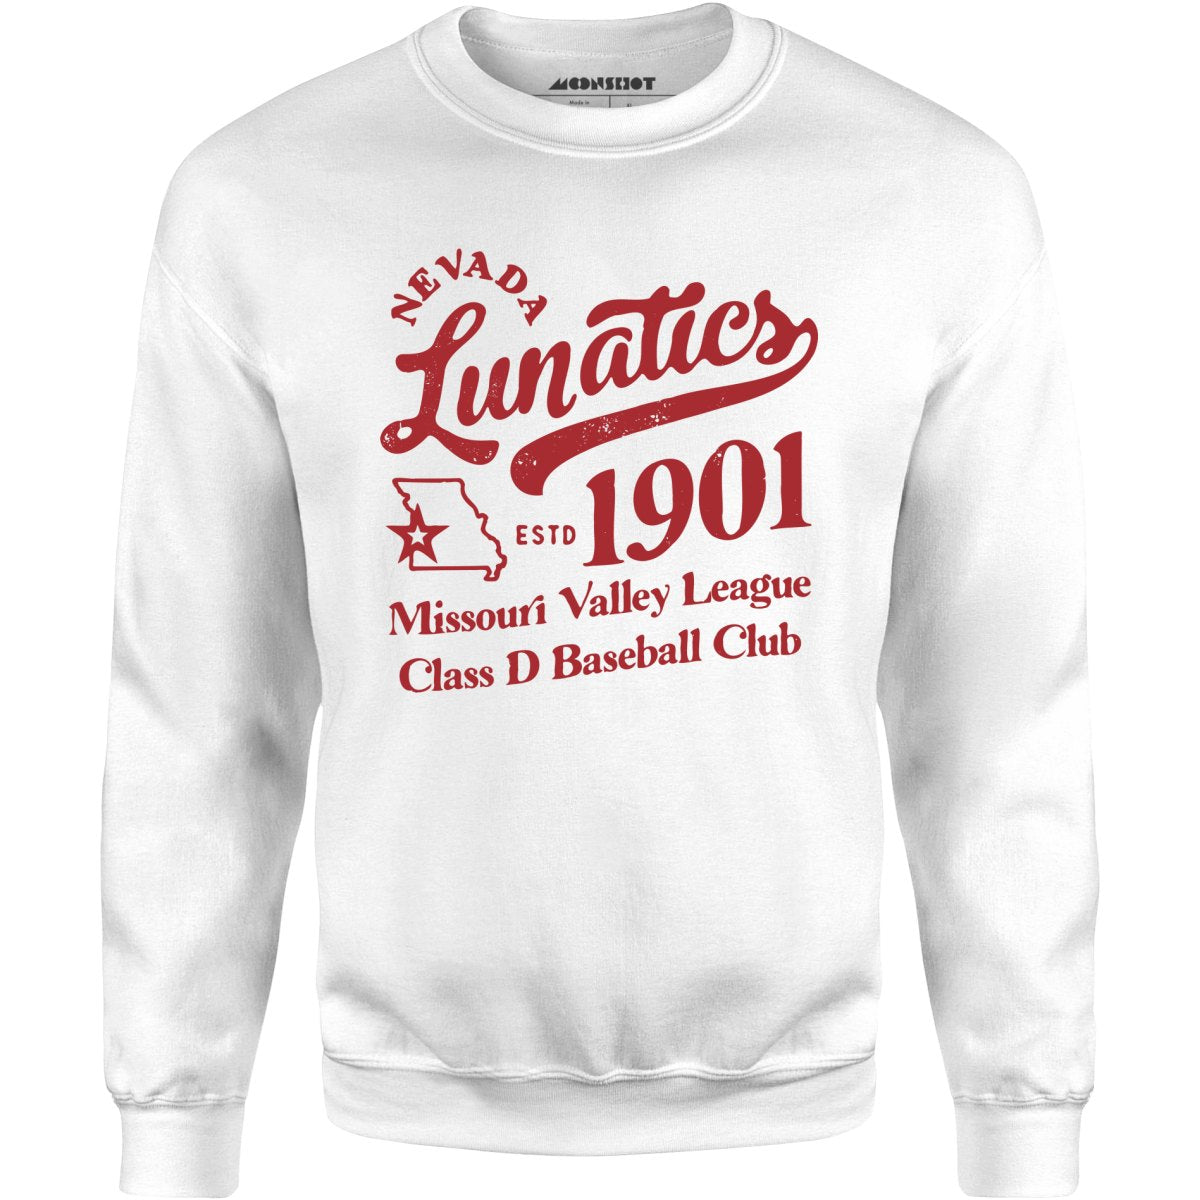 Nevada Lunatics - Missouri - Vintage Defunct Baseball Teams - Unisex Sweatshirt